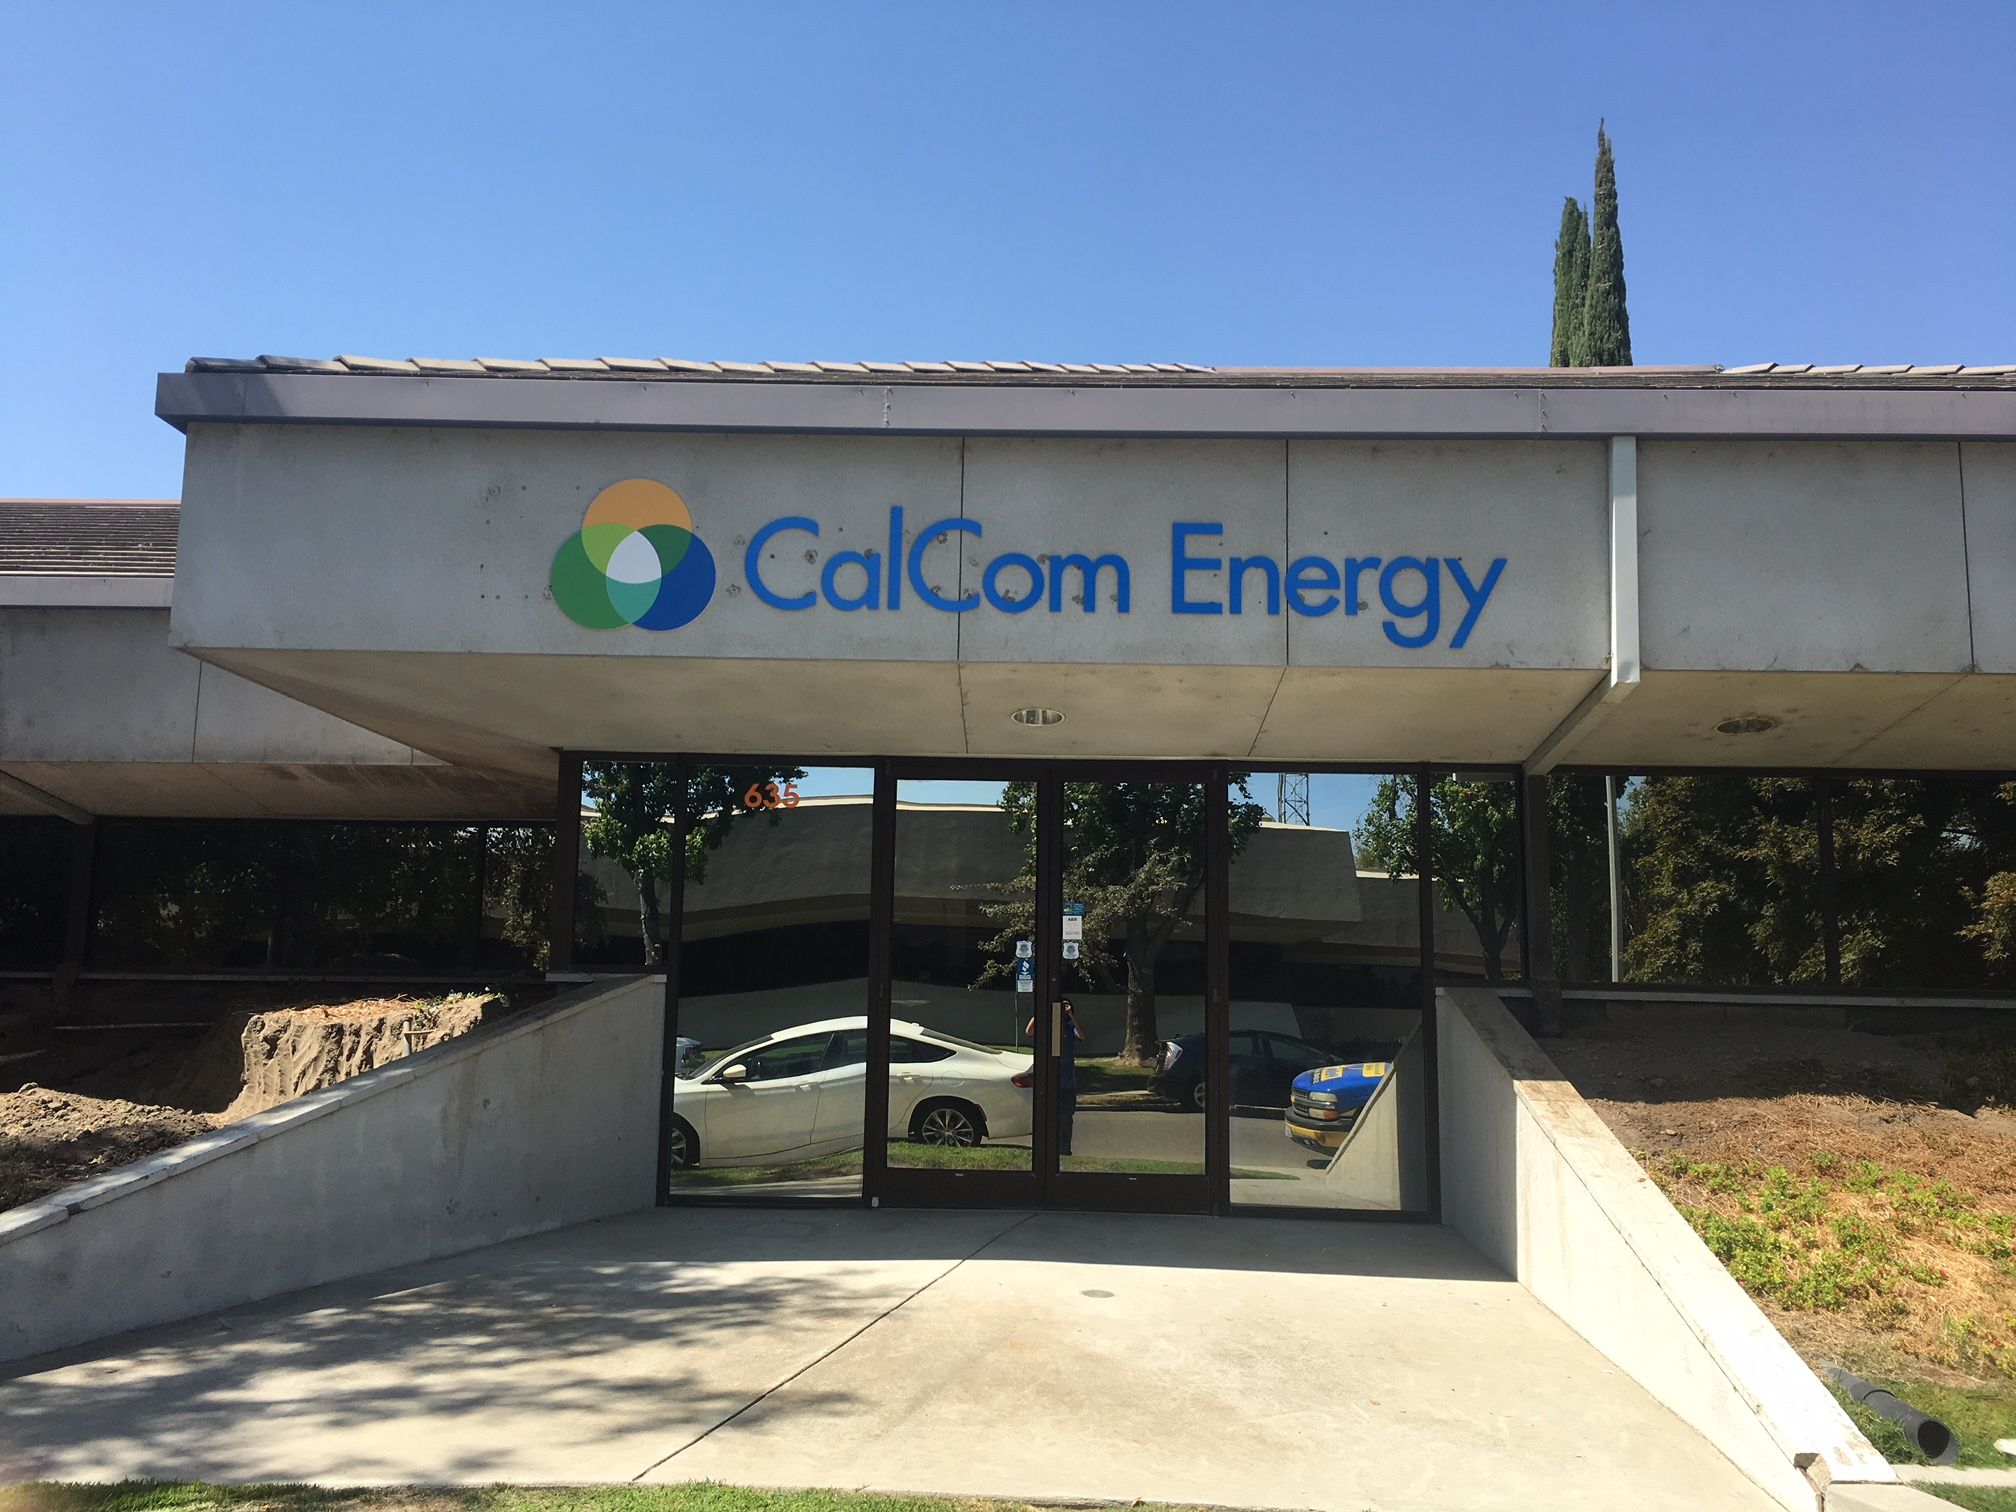 CalCom Energy